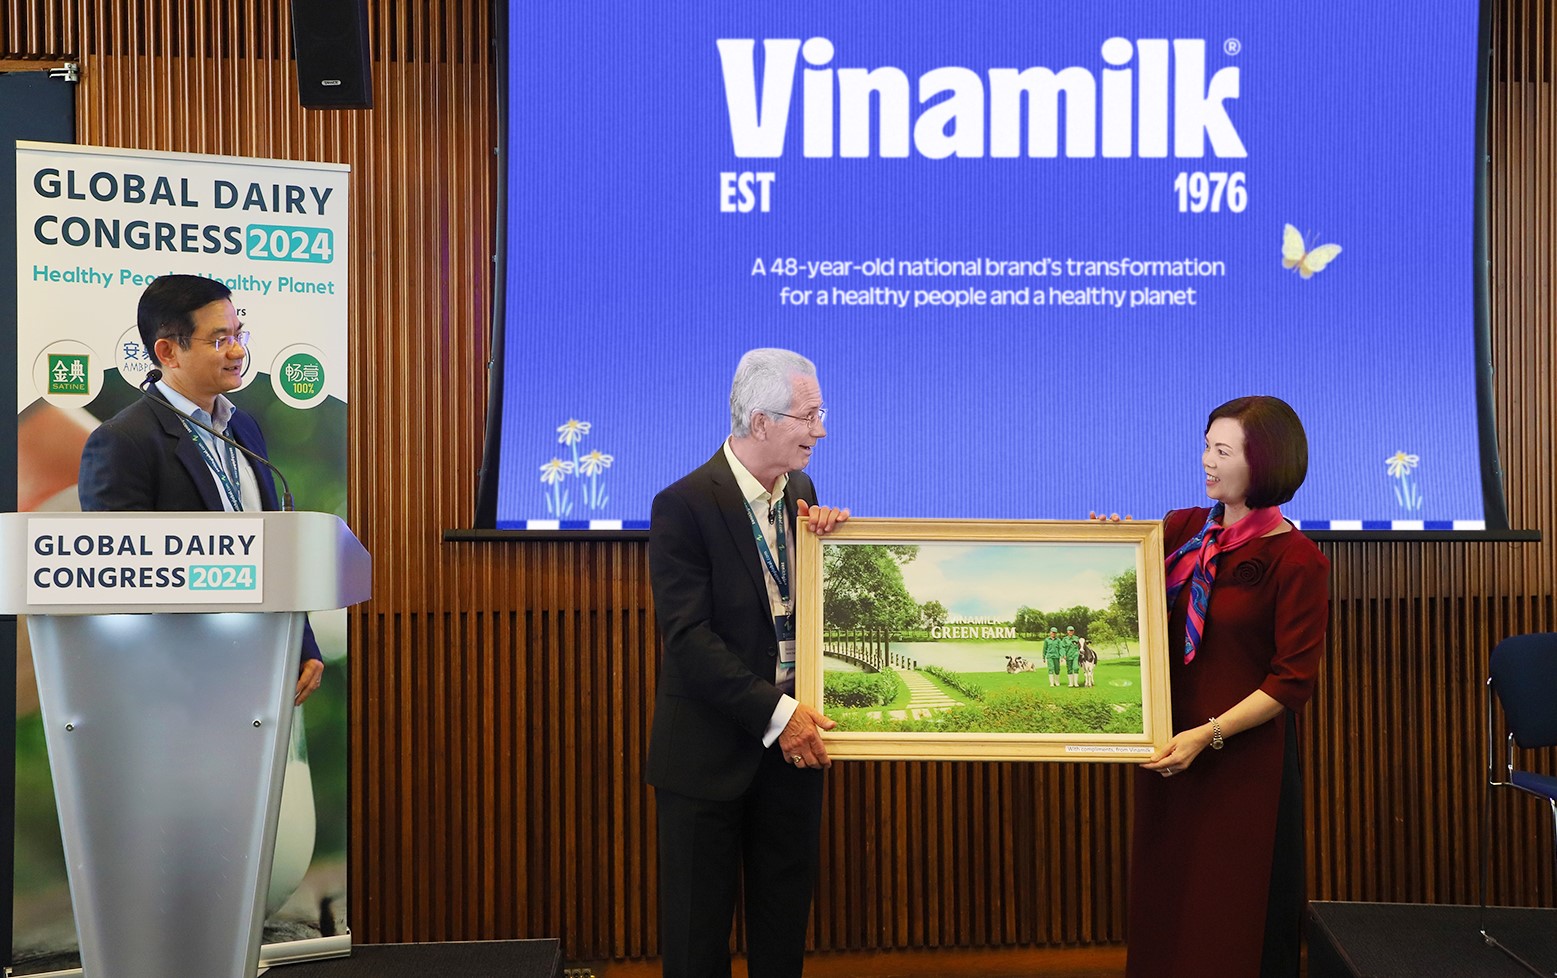 Đại diện Vinamilk trao bức trang trang trại Green Farm cho ông Richard Hall, Chủ tịch Hội nghị sữa toàn cầu. Ảnh: Vinamilk